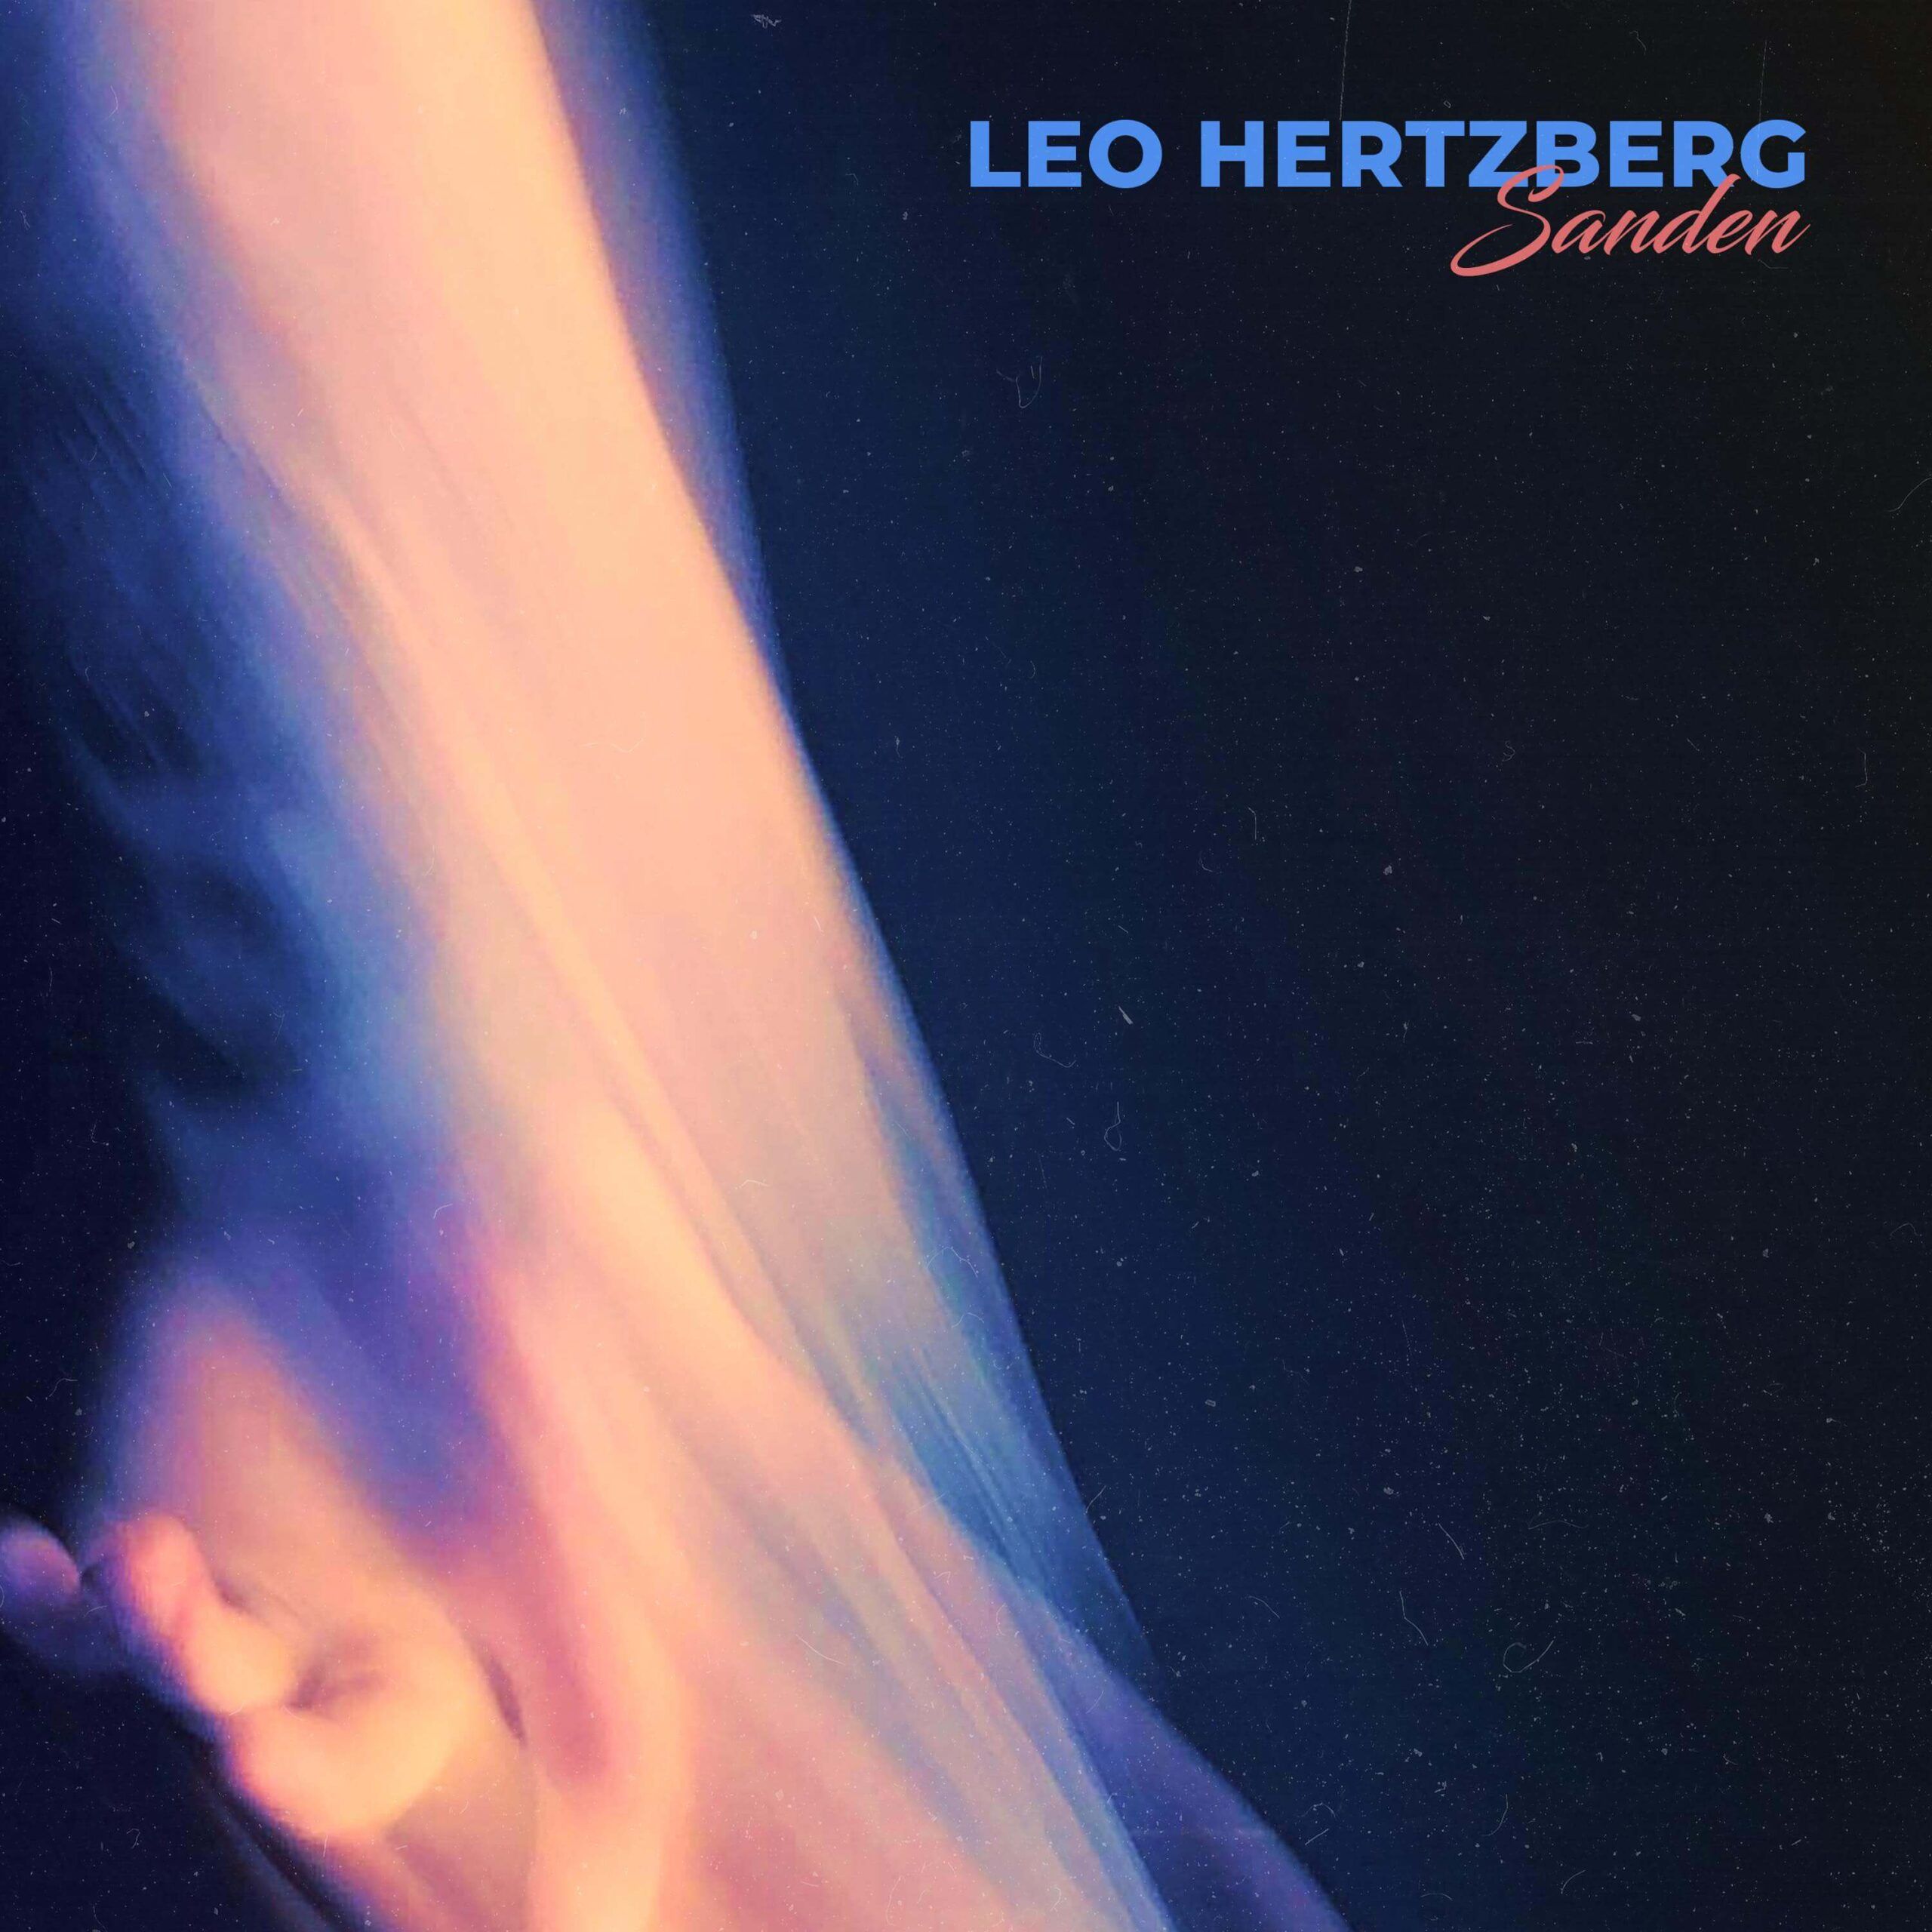 Leo Hertzberg sanden fotoskydd